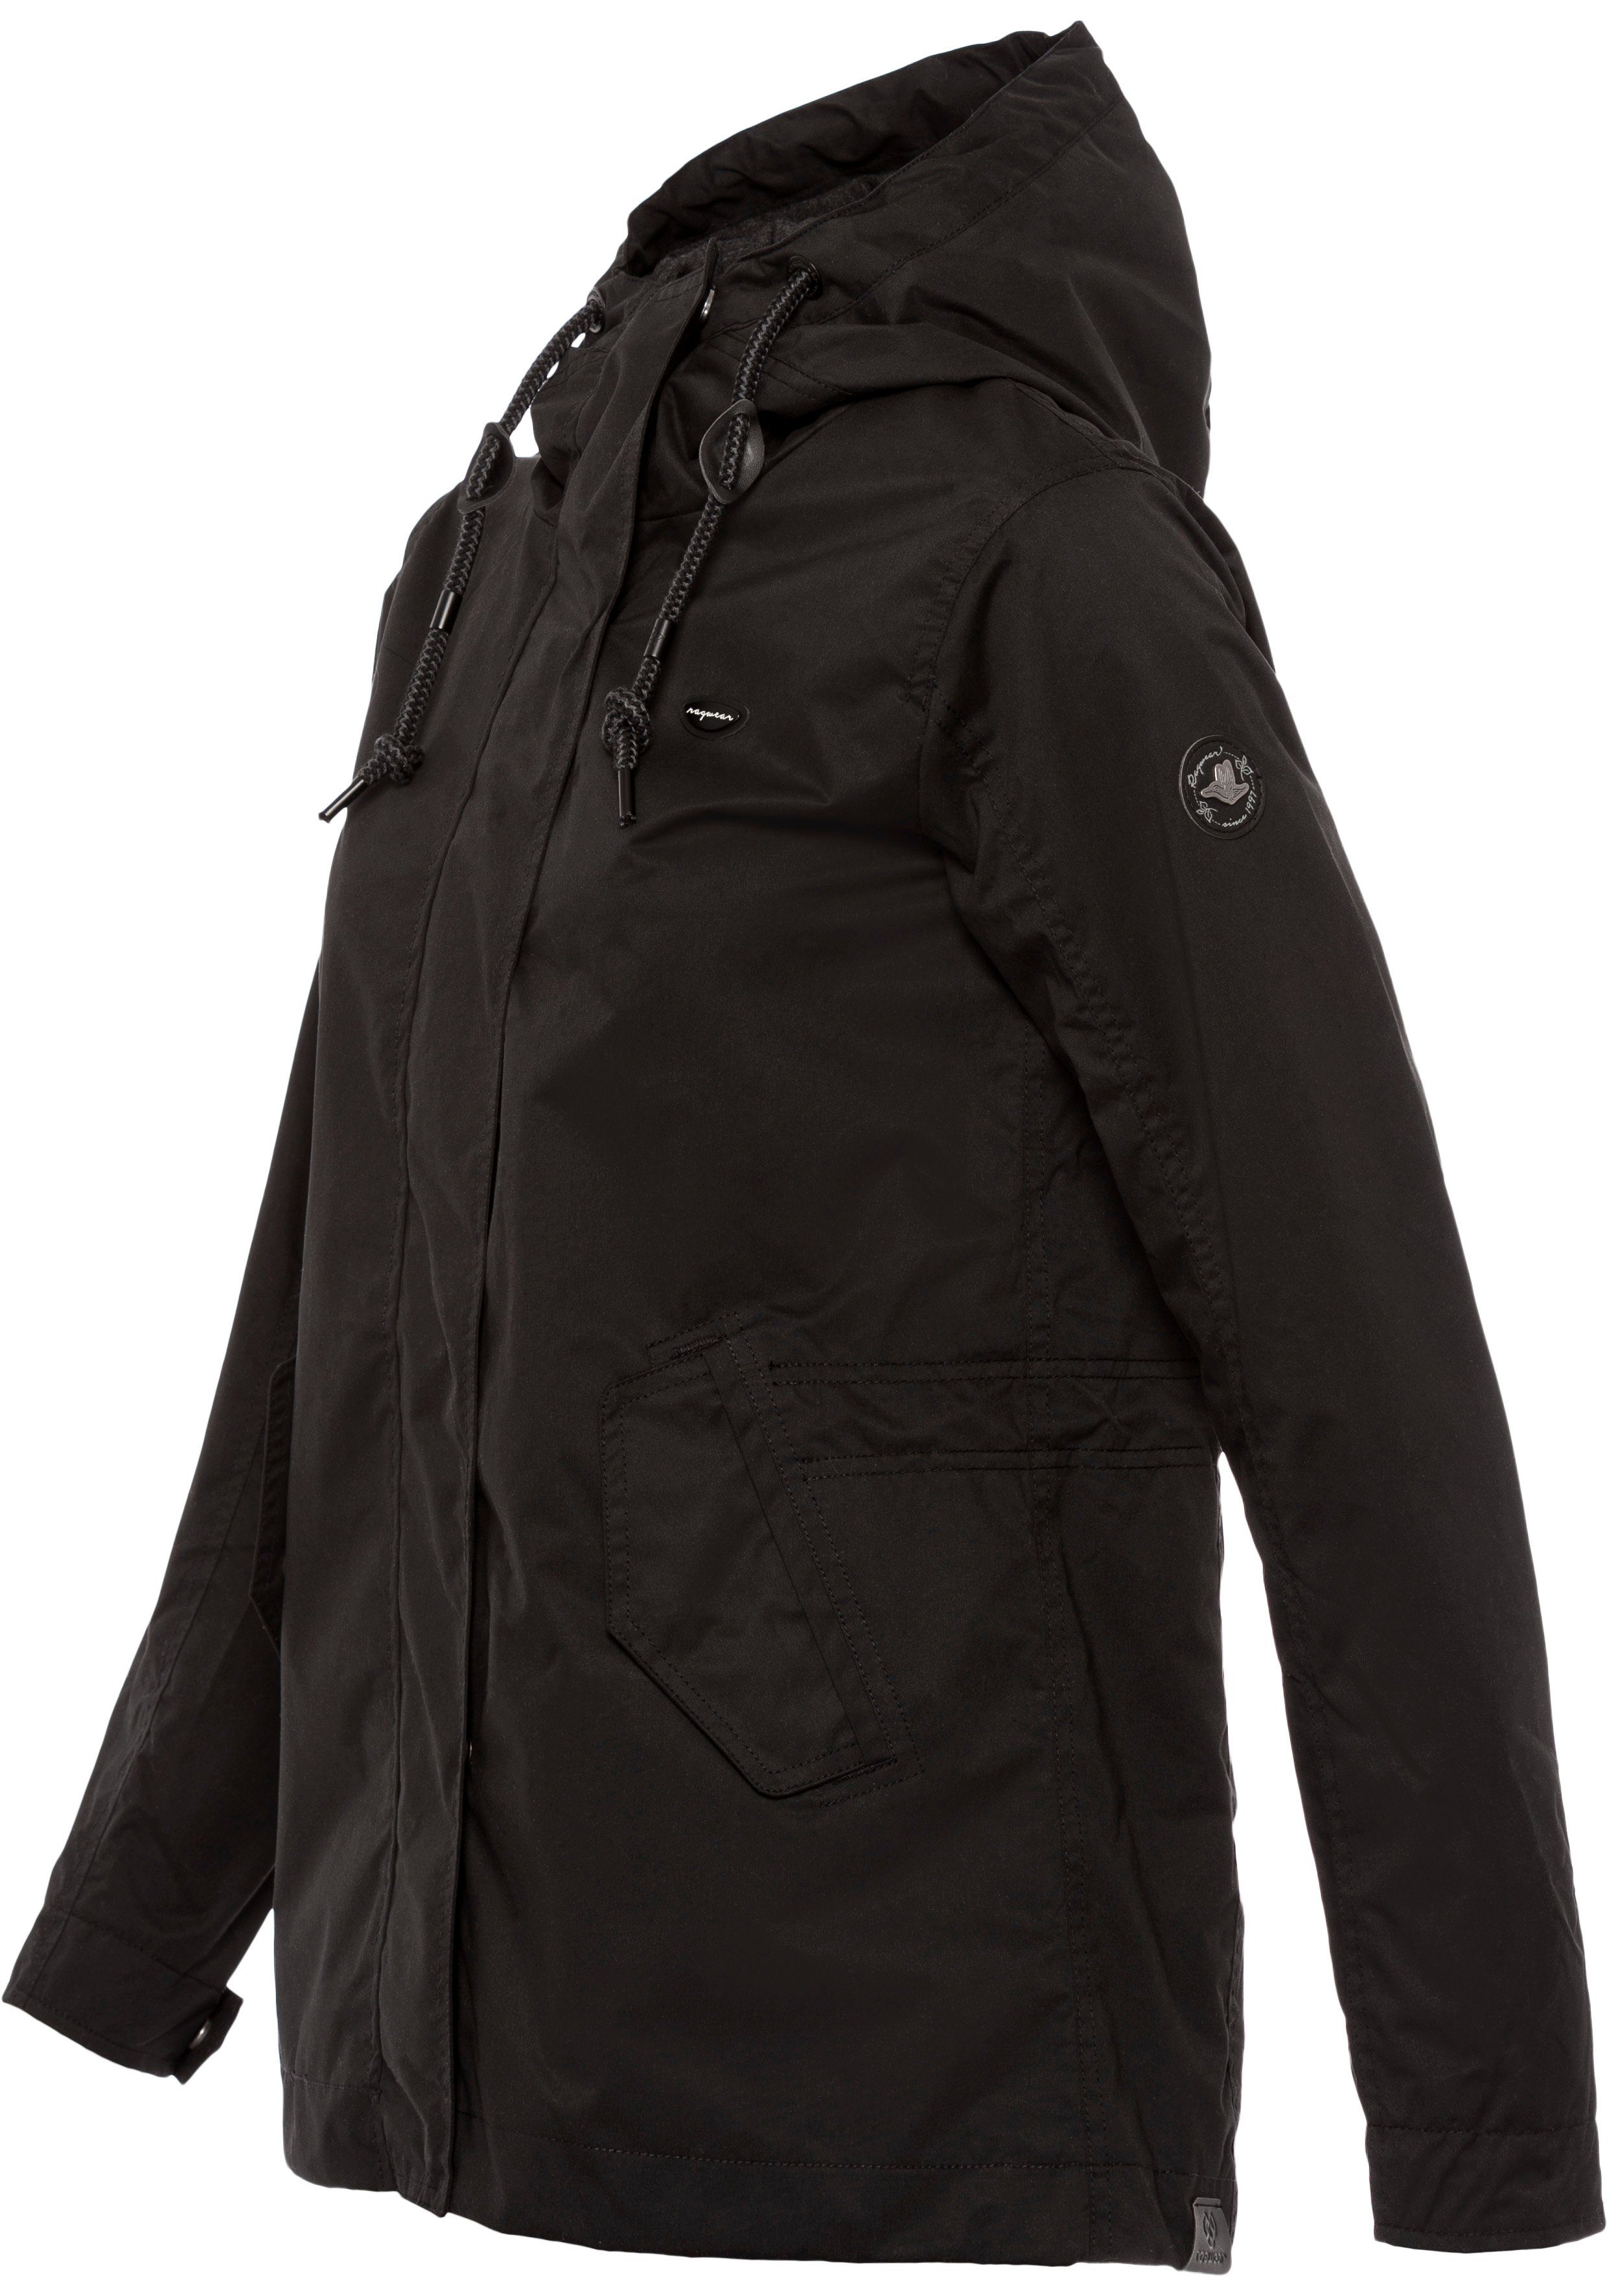 LENCA Ragwear Übergangsjacke black stylische fabric 1010 Funktionsjacke Waterproof